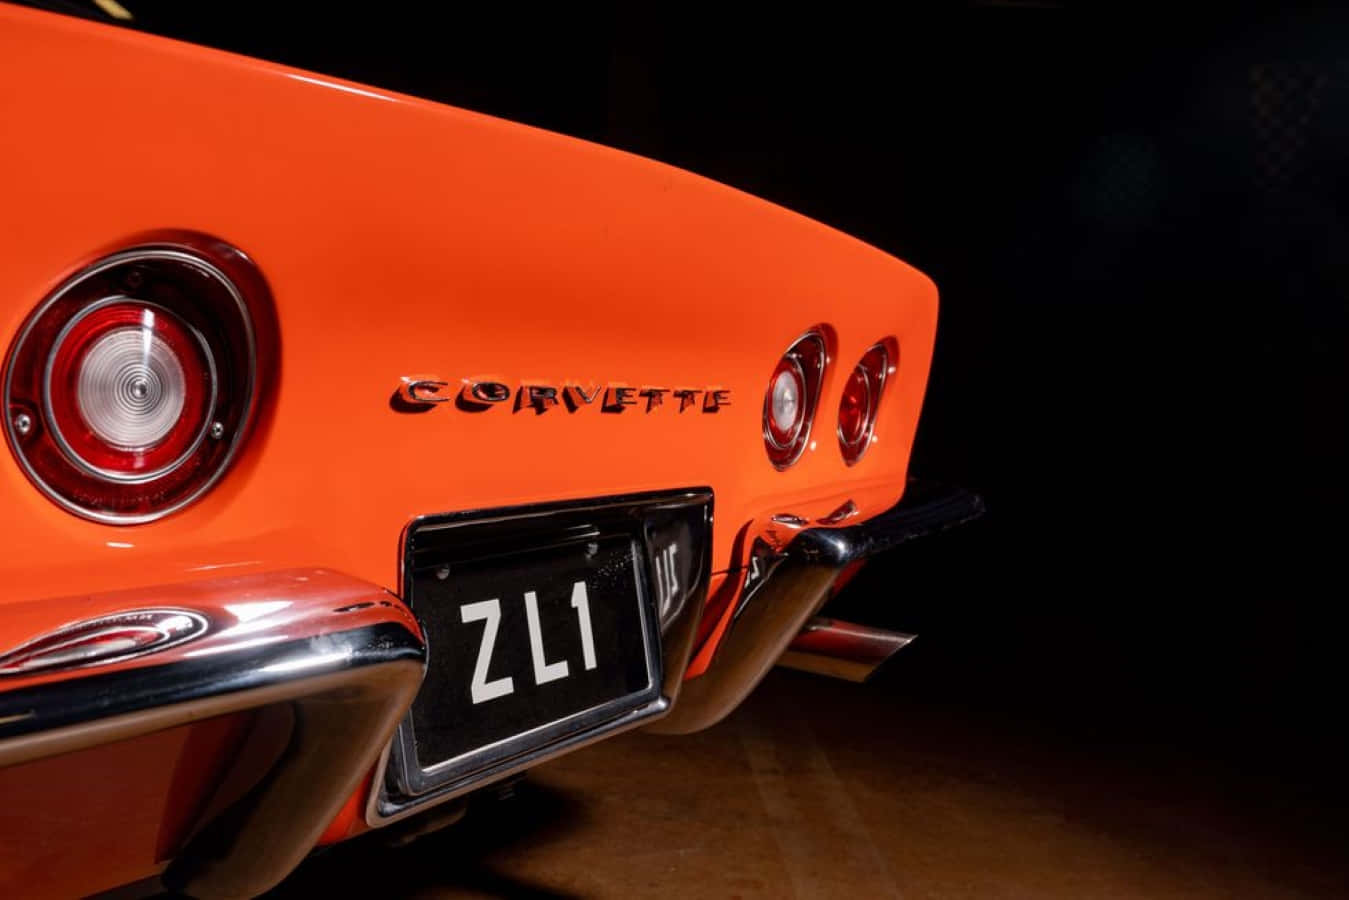 Stunning Chevrolet Corvette ZL1 in Vibrant Orange Wallpaper